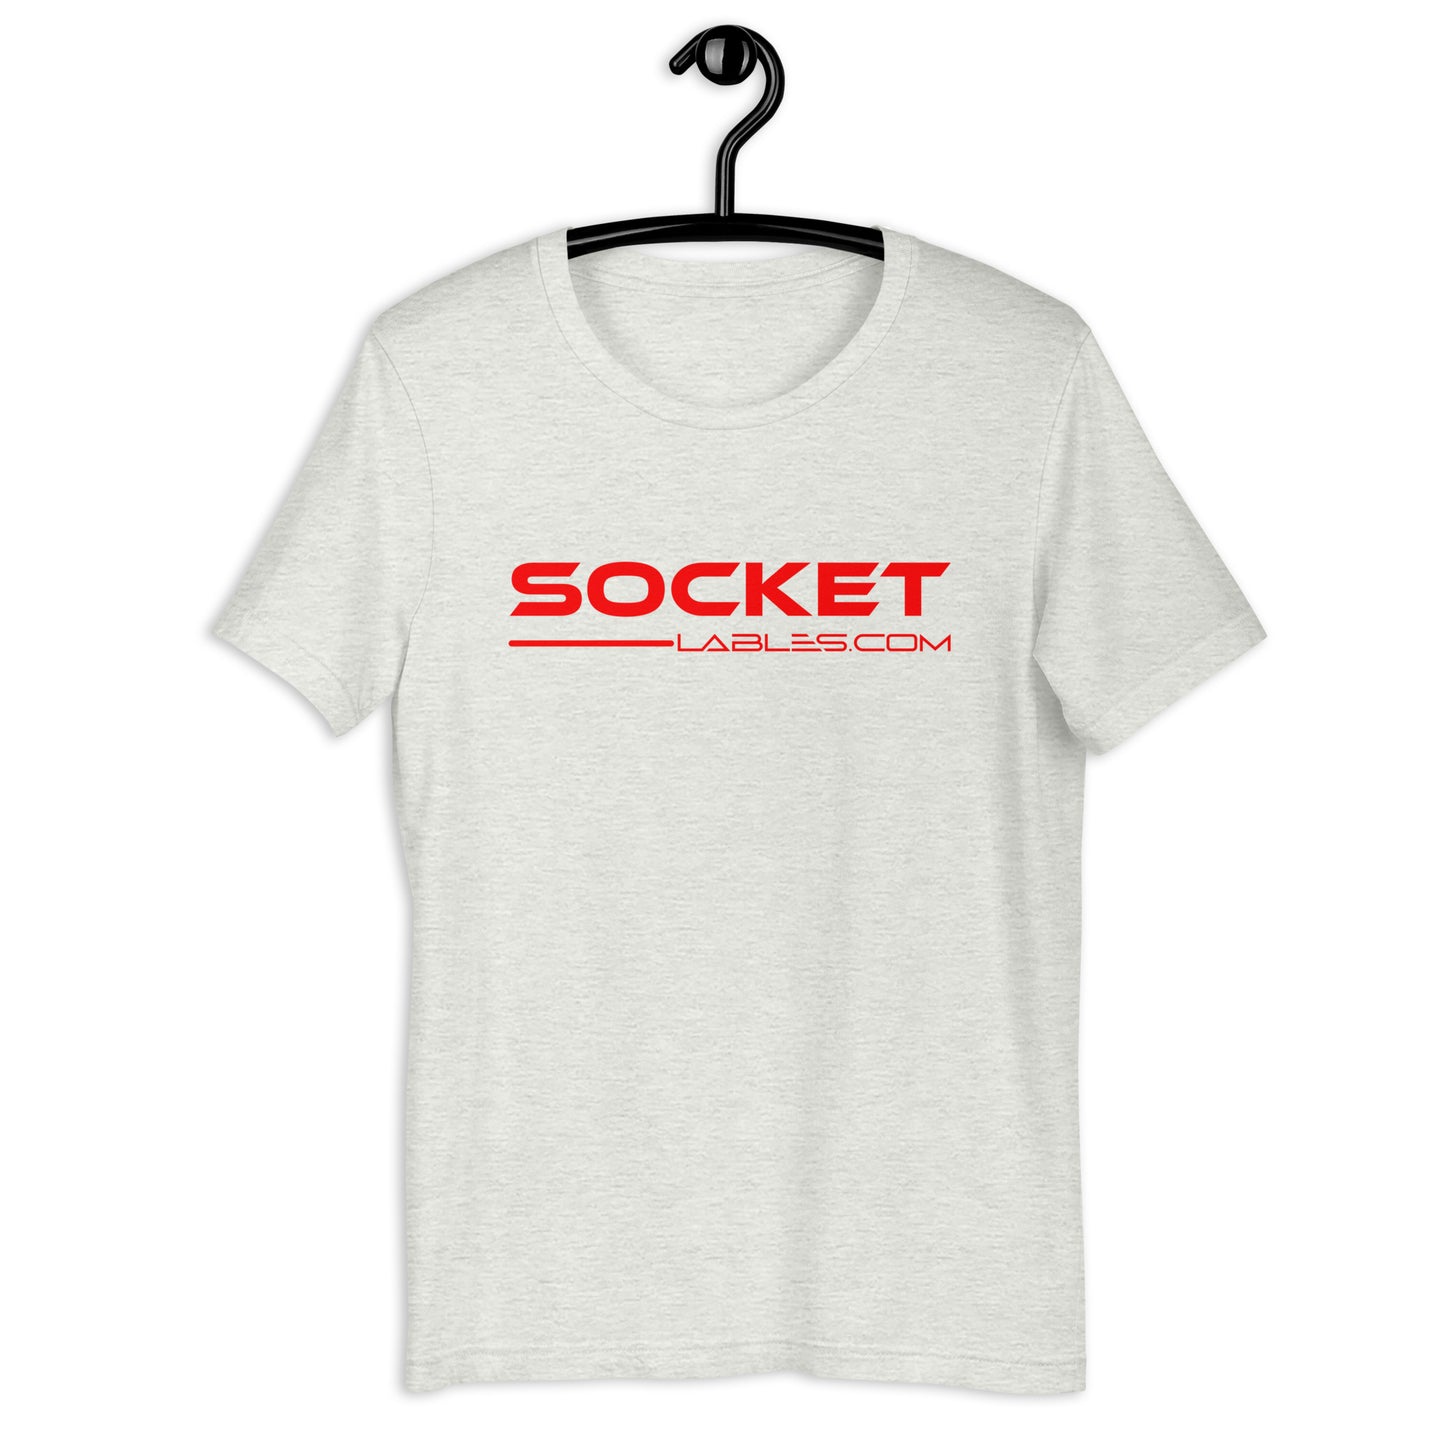 Socket Labels.com t-shirt